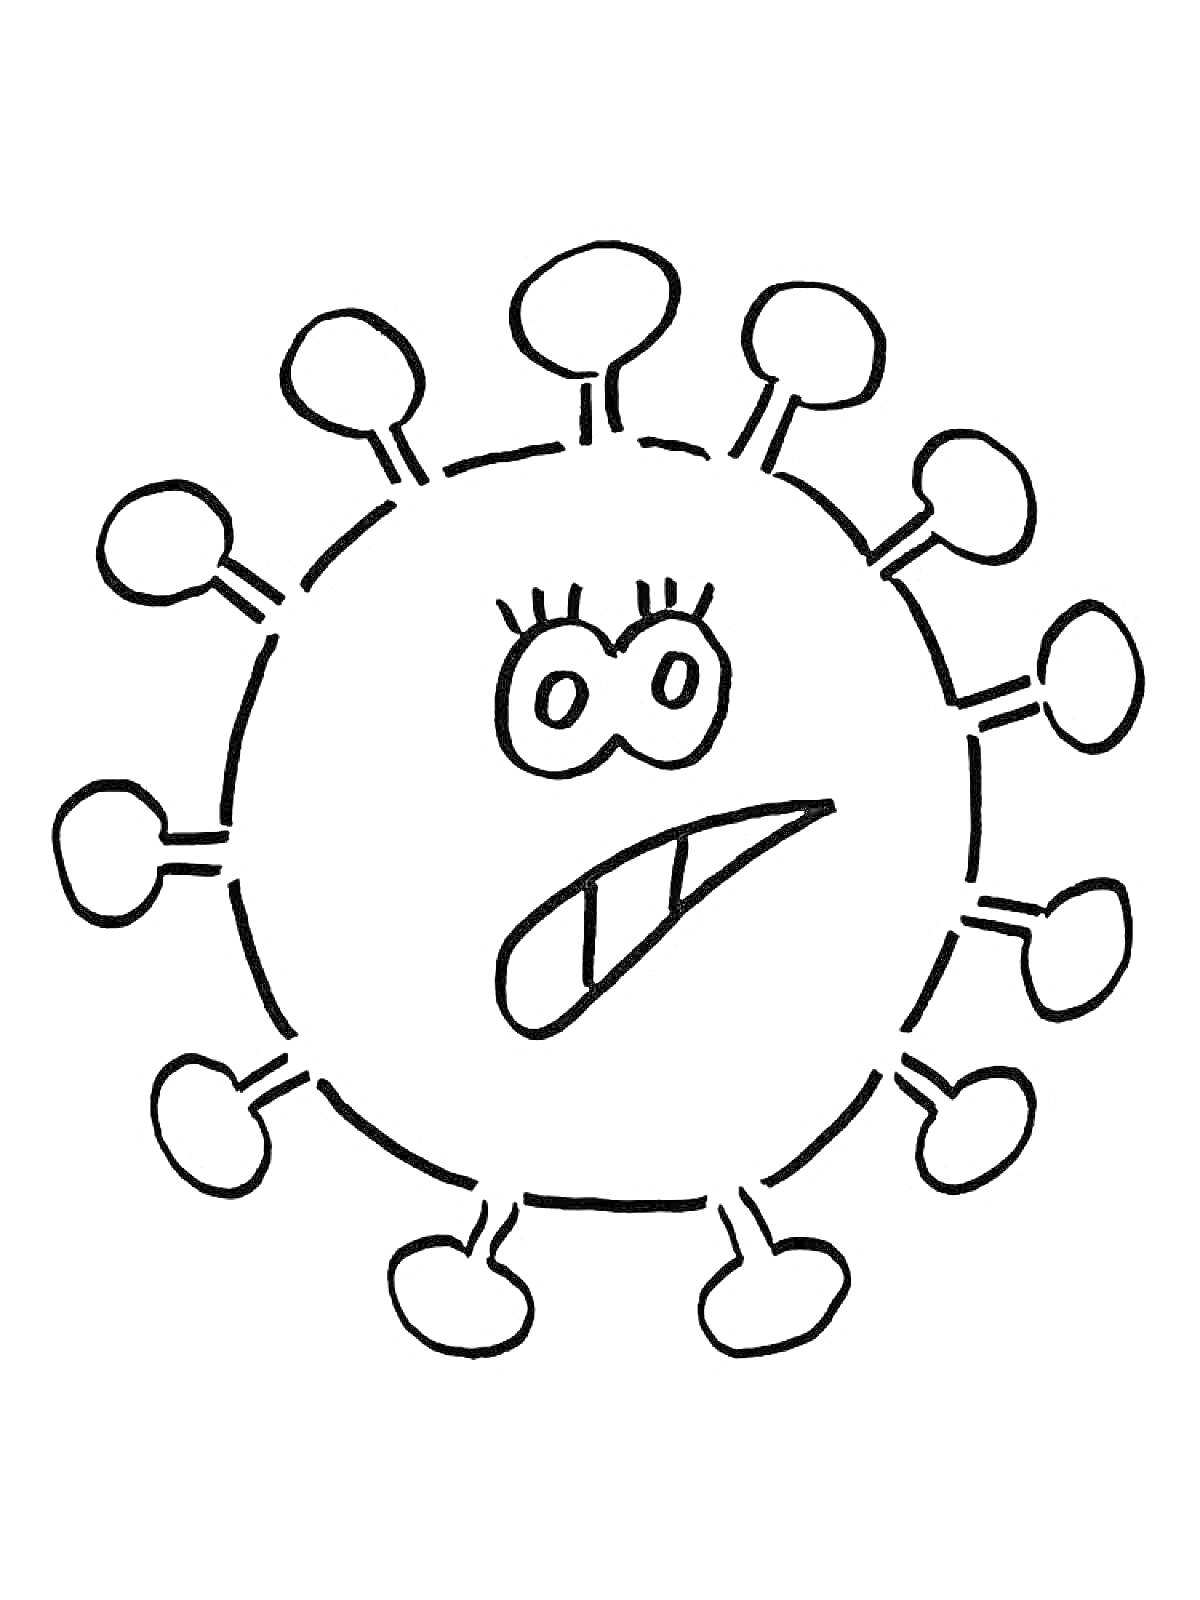 Раскраска Изображение коронавируса с глазами и открытым ртом